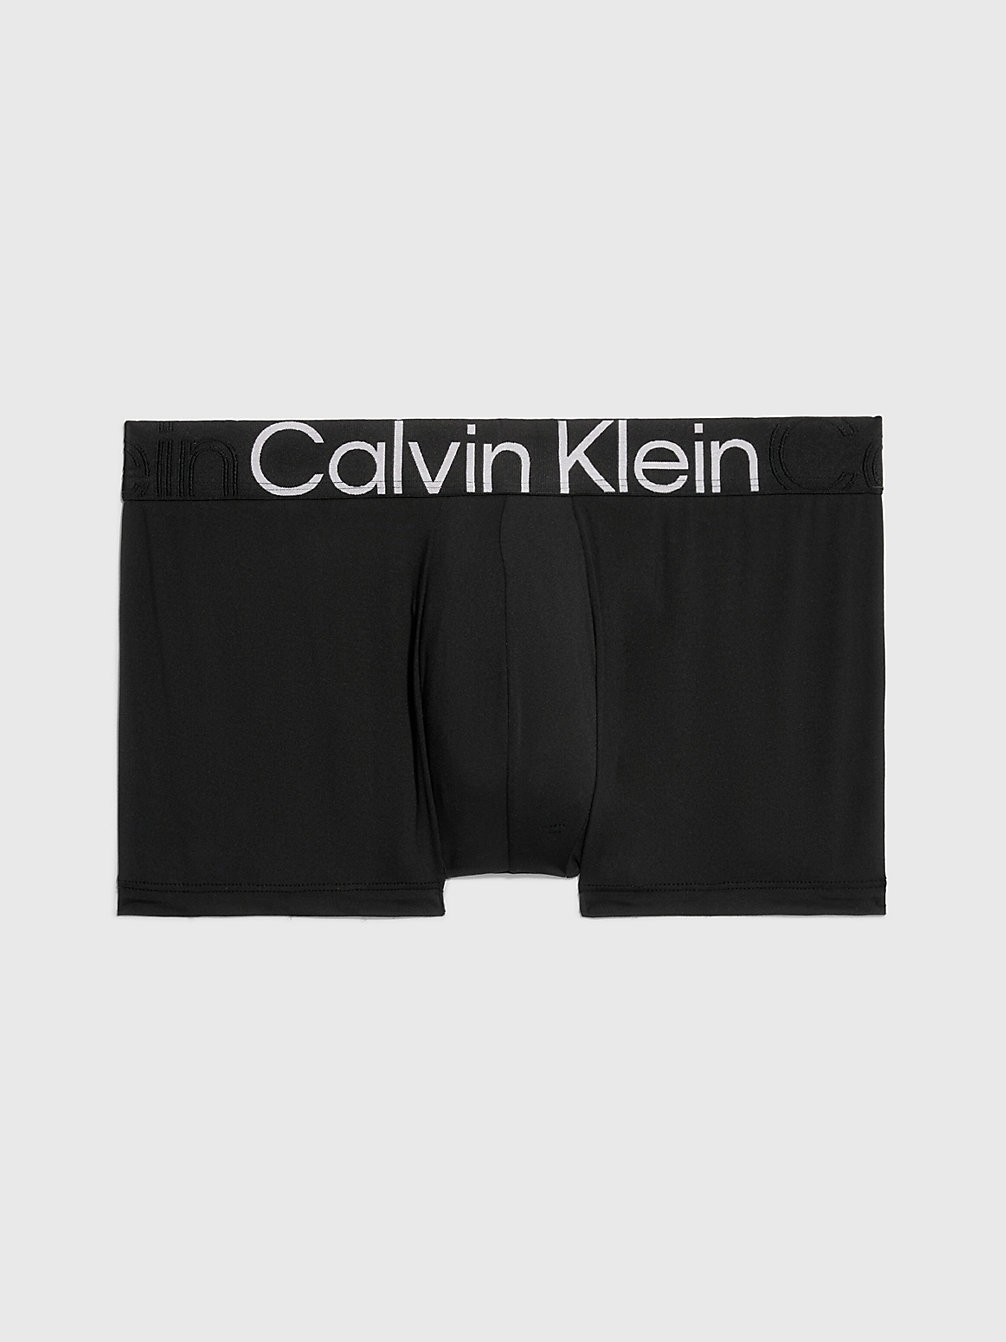 MYCALVINS Collection for Men | Calvin Klein®